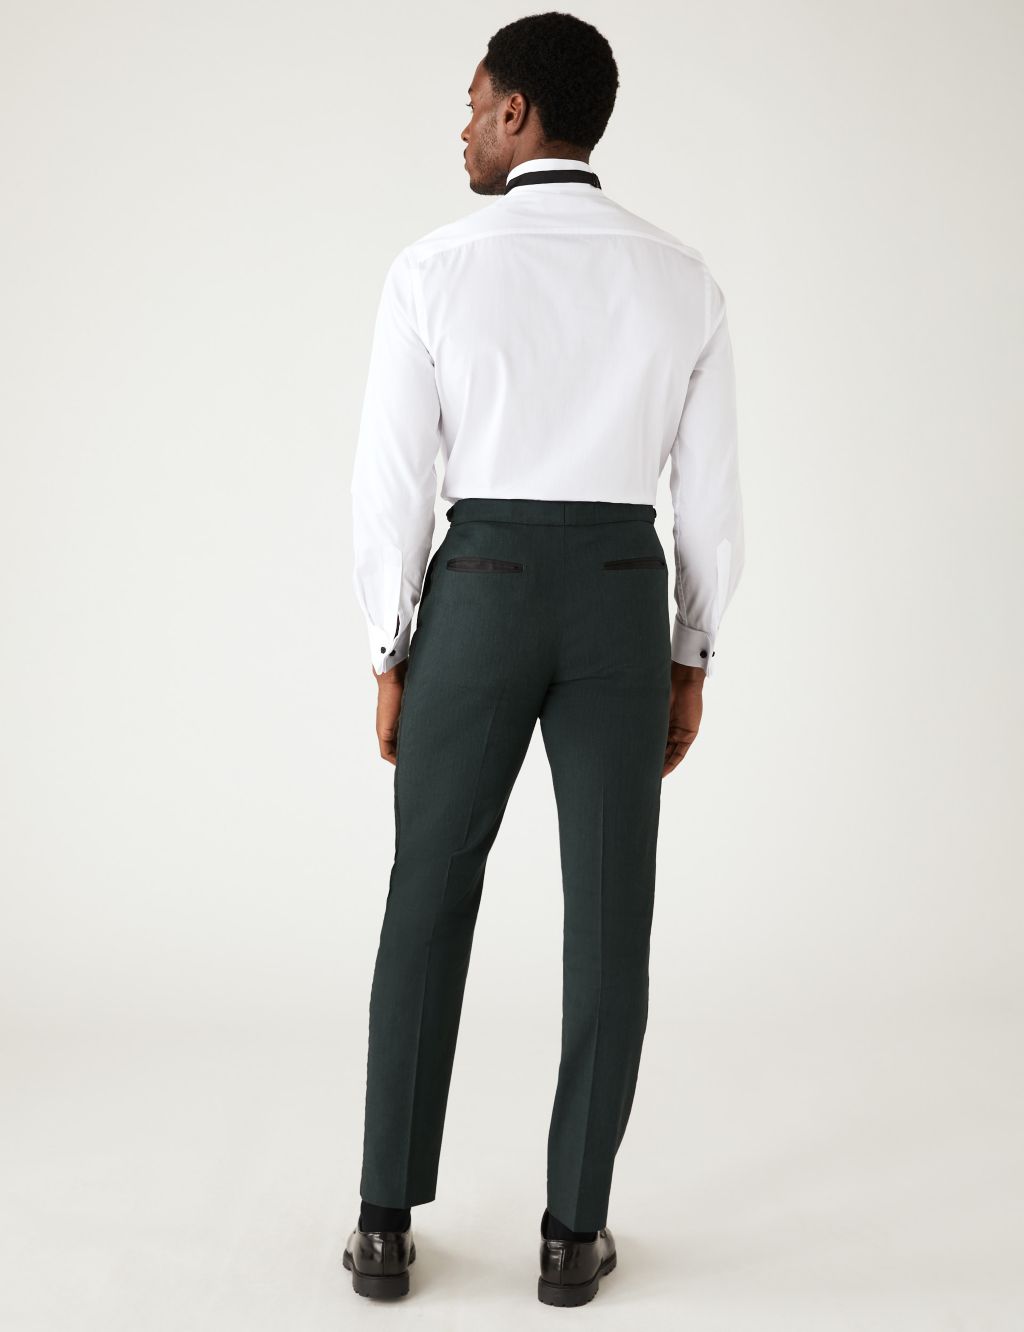 Tailored Fit Italian Linen Miracle™ Tuxedo image 6